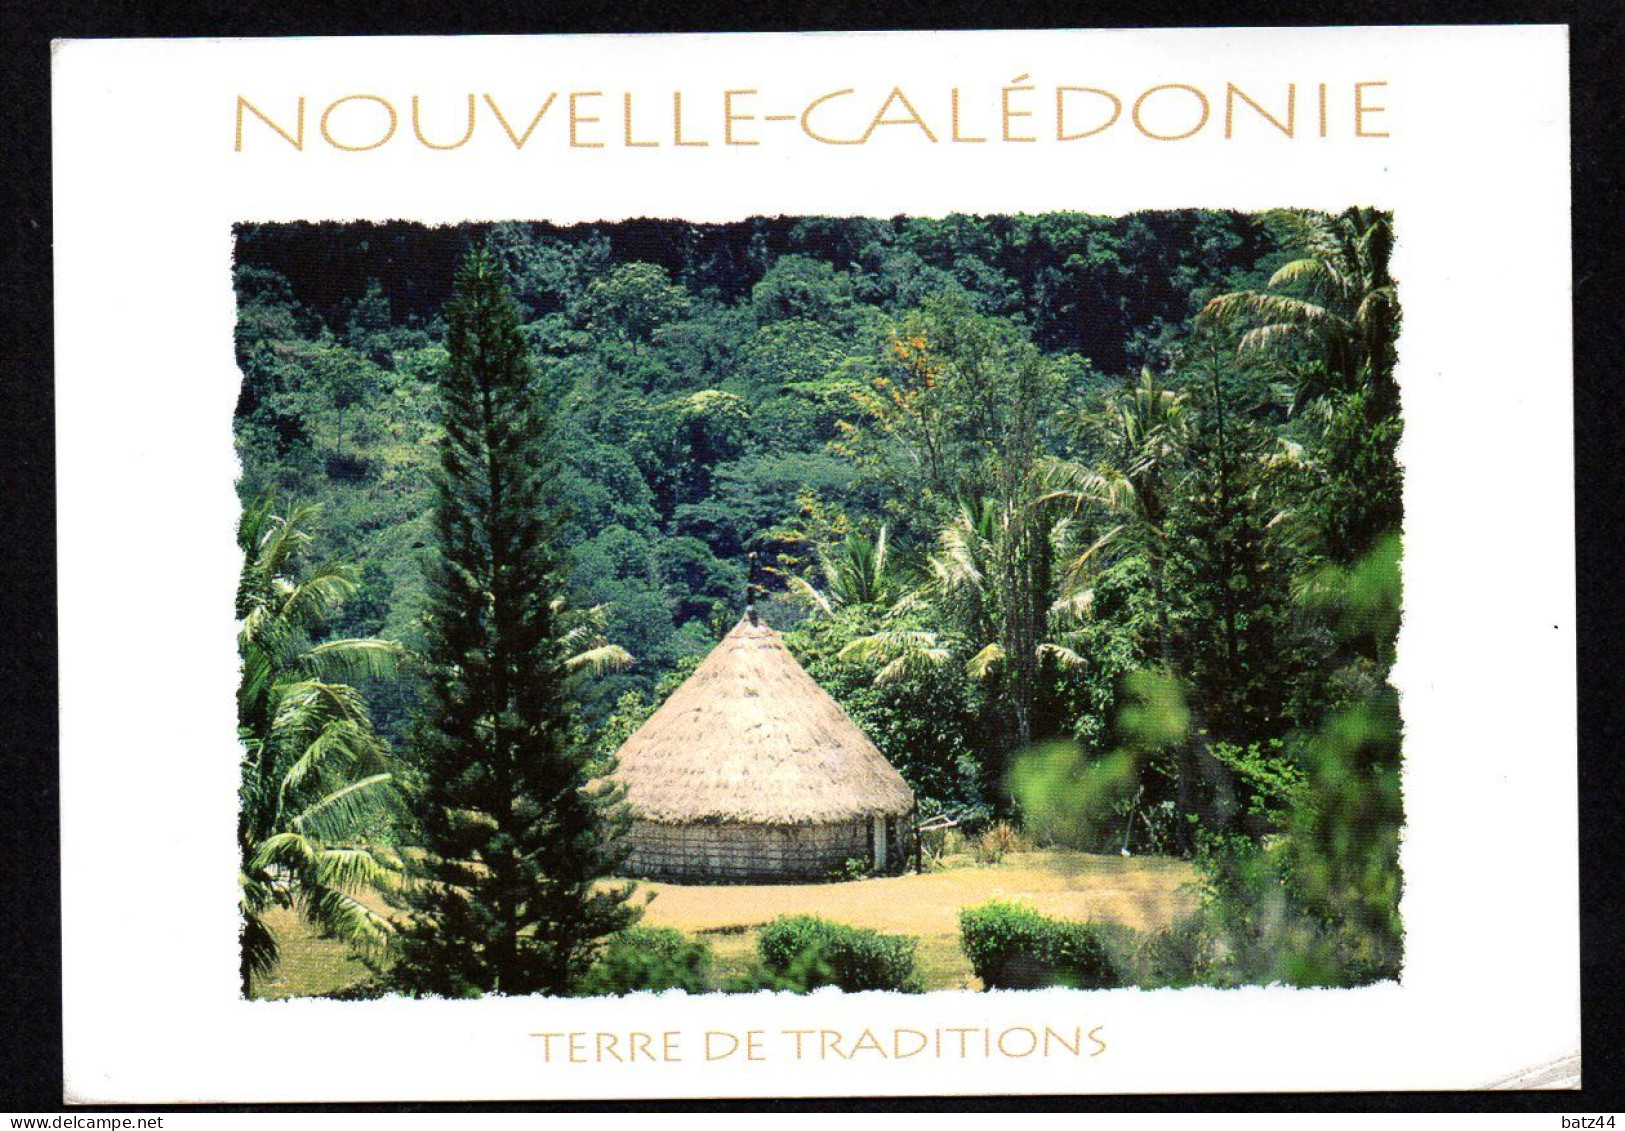 NOUVELLE CALEDONIE  4 carte postale postcard écrites